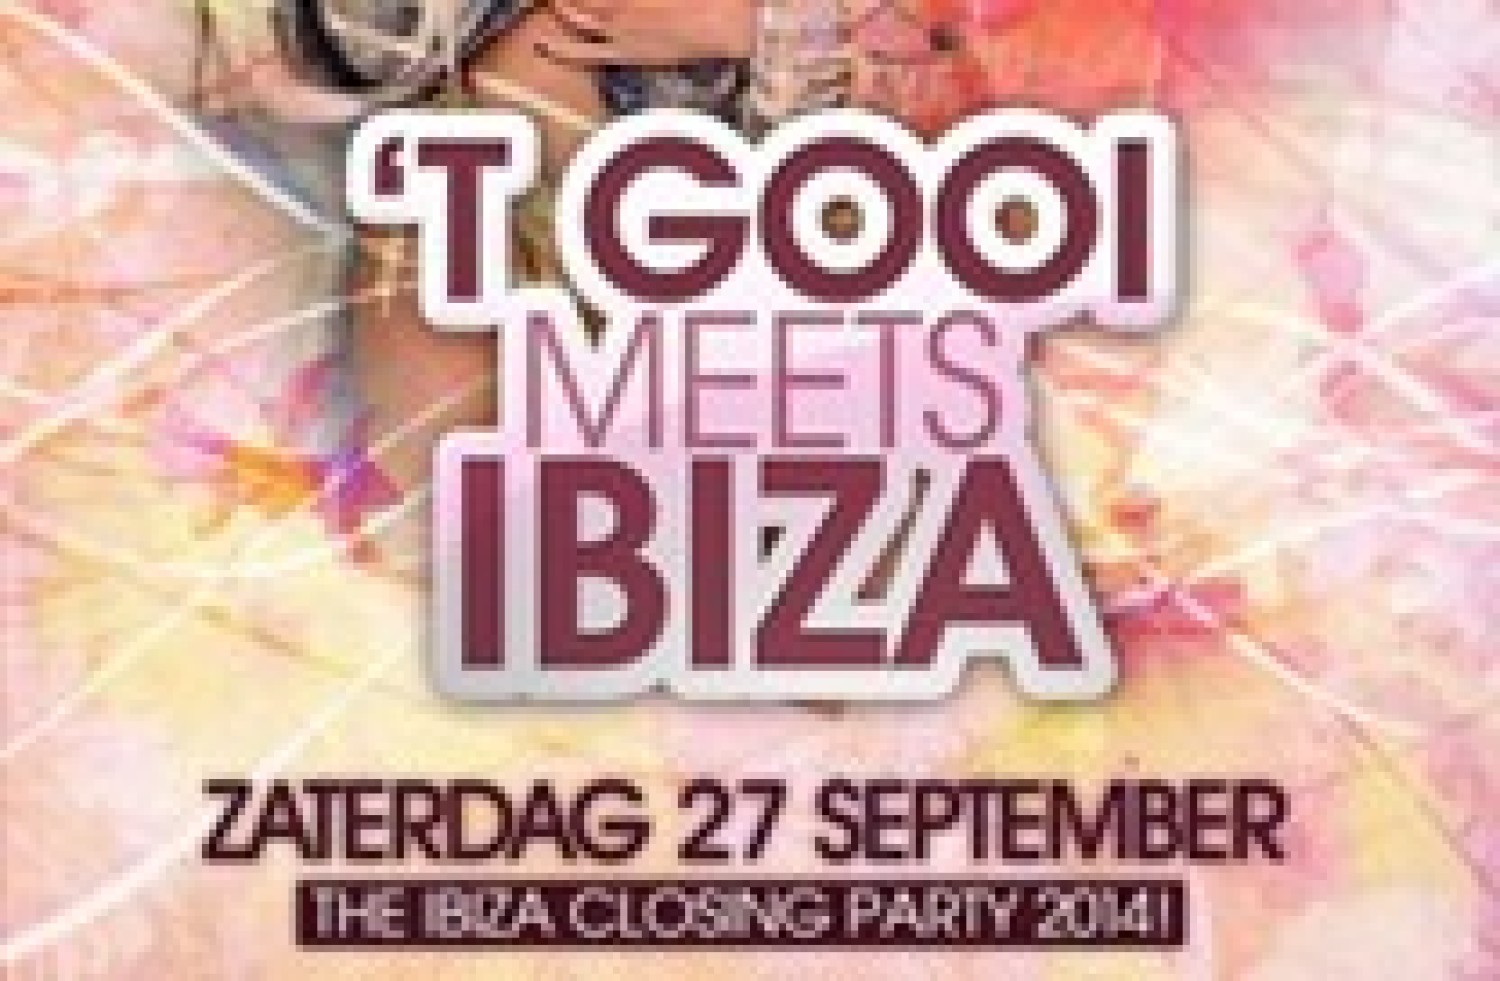 Party nieuws: 't Gooi Meets Ibiza, feest in sprookjesachtige locatie